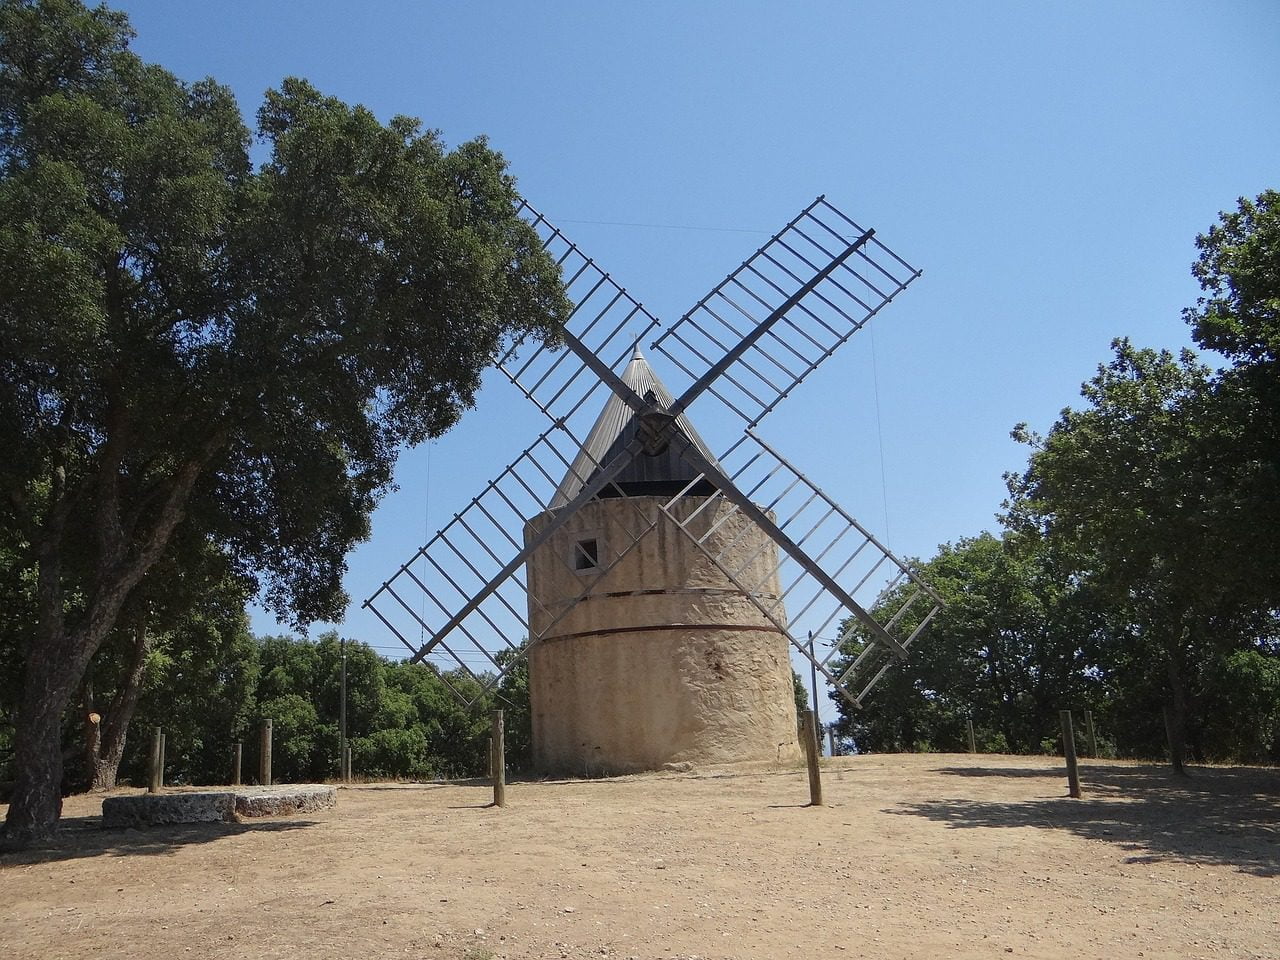 Les journées européennes du patrimoine aux moulins de Ramatuelle, photographie de agnesti de Pixabay